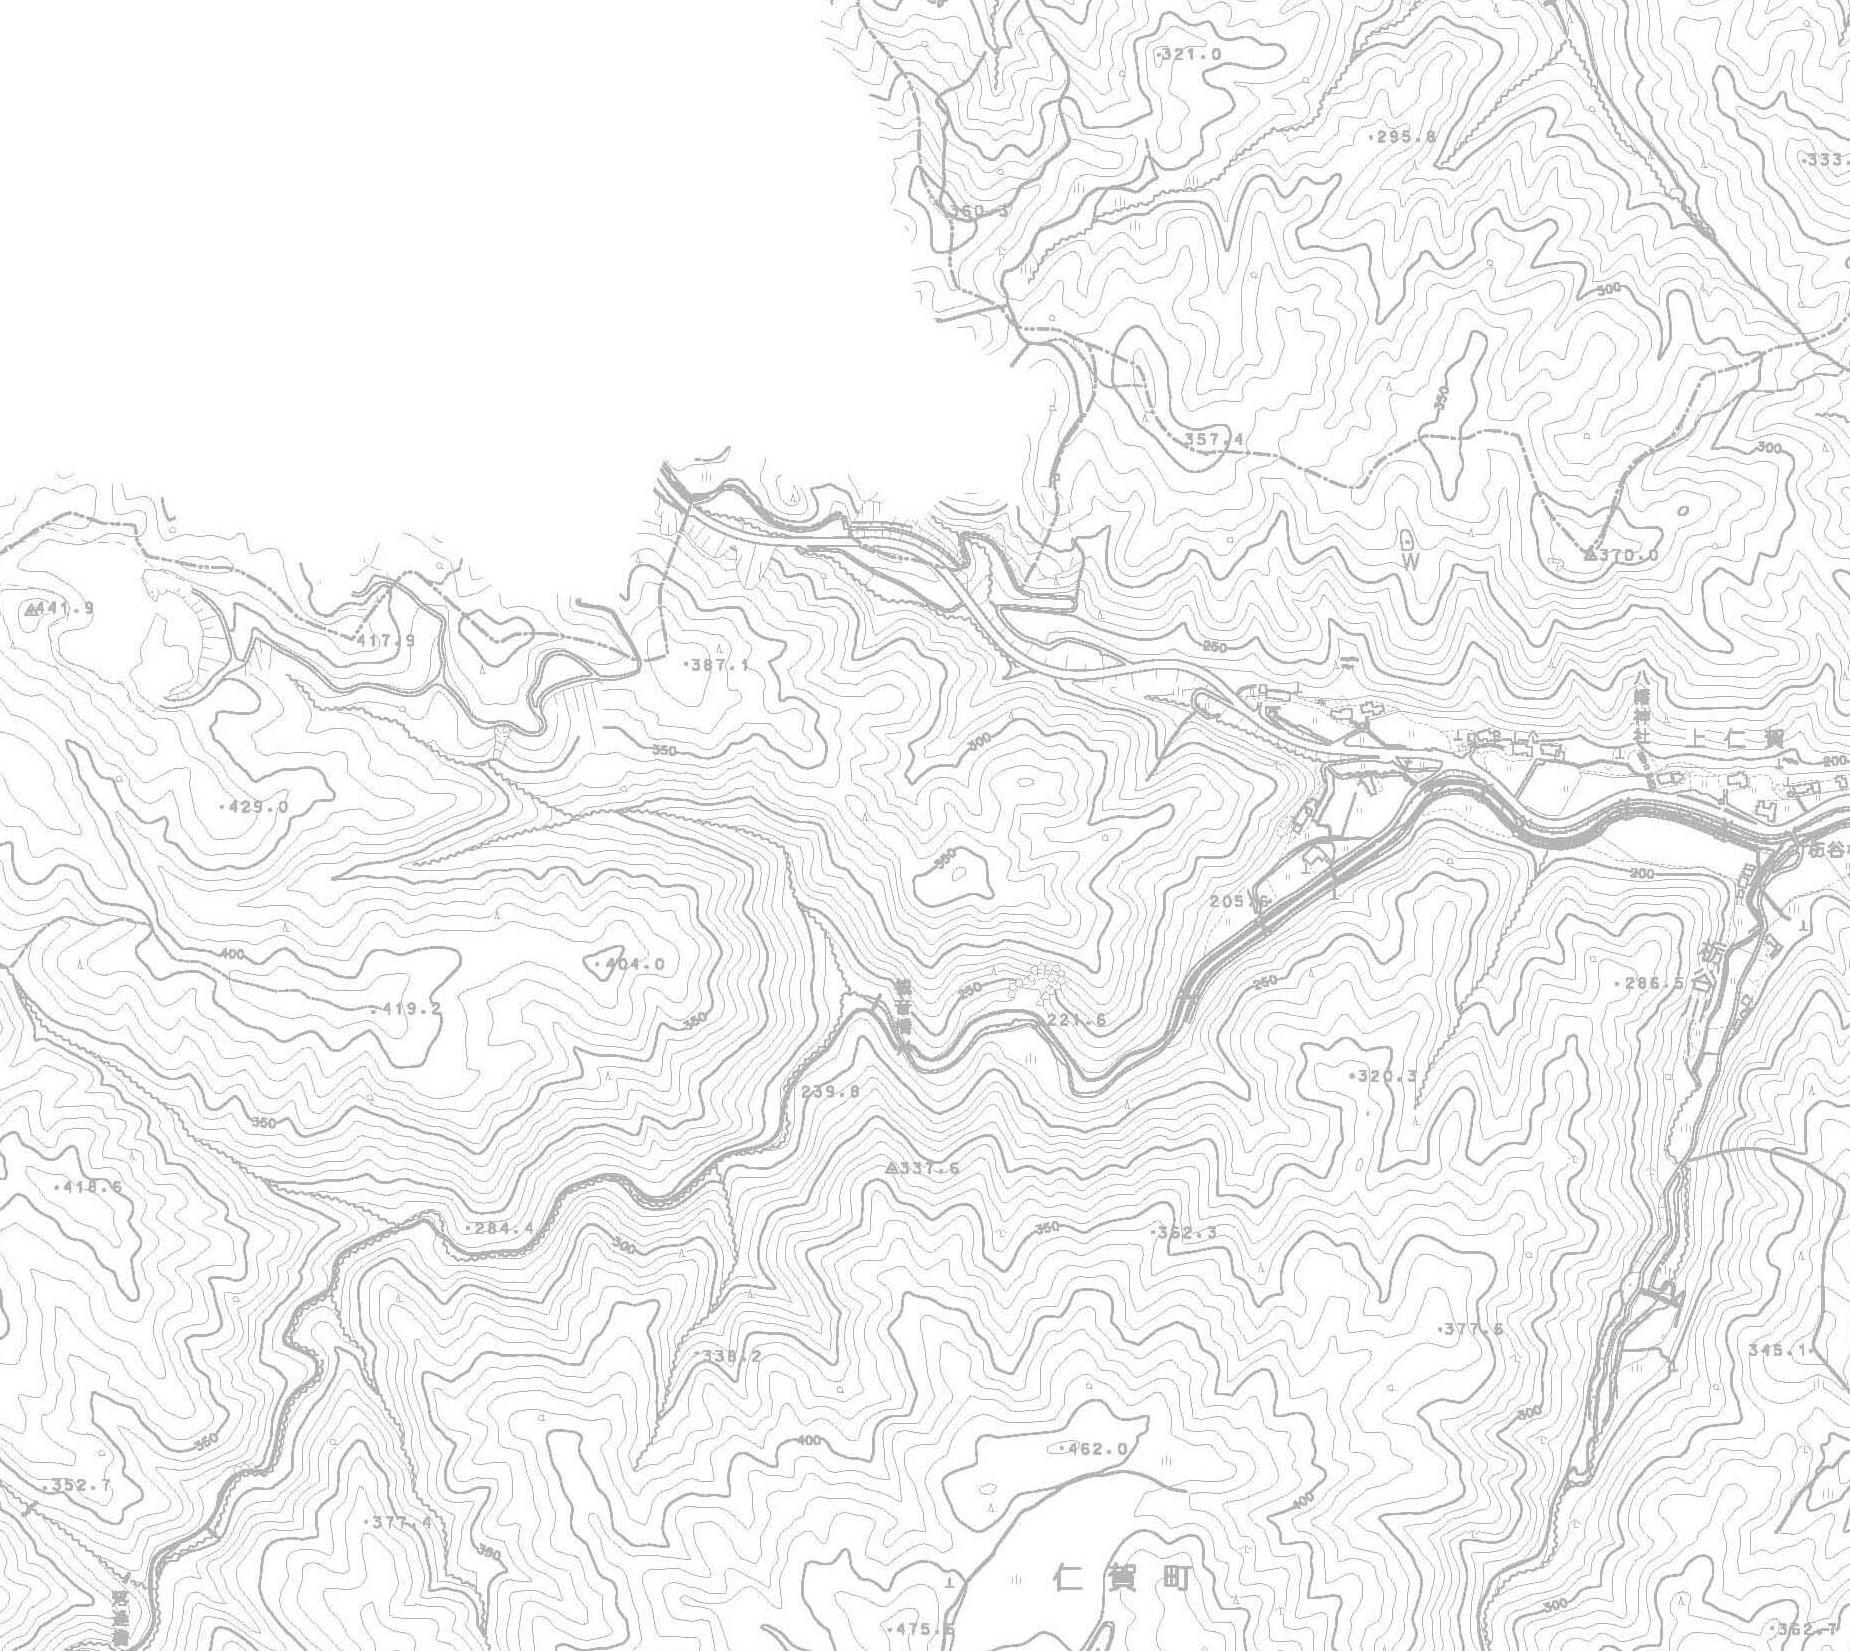 都市計画図b03の地図画像